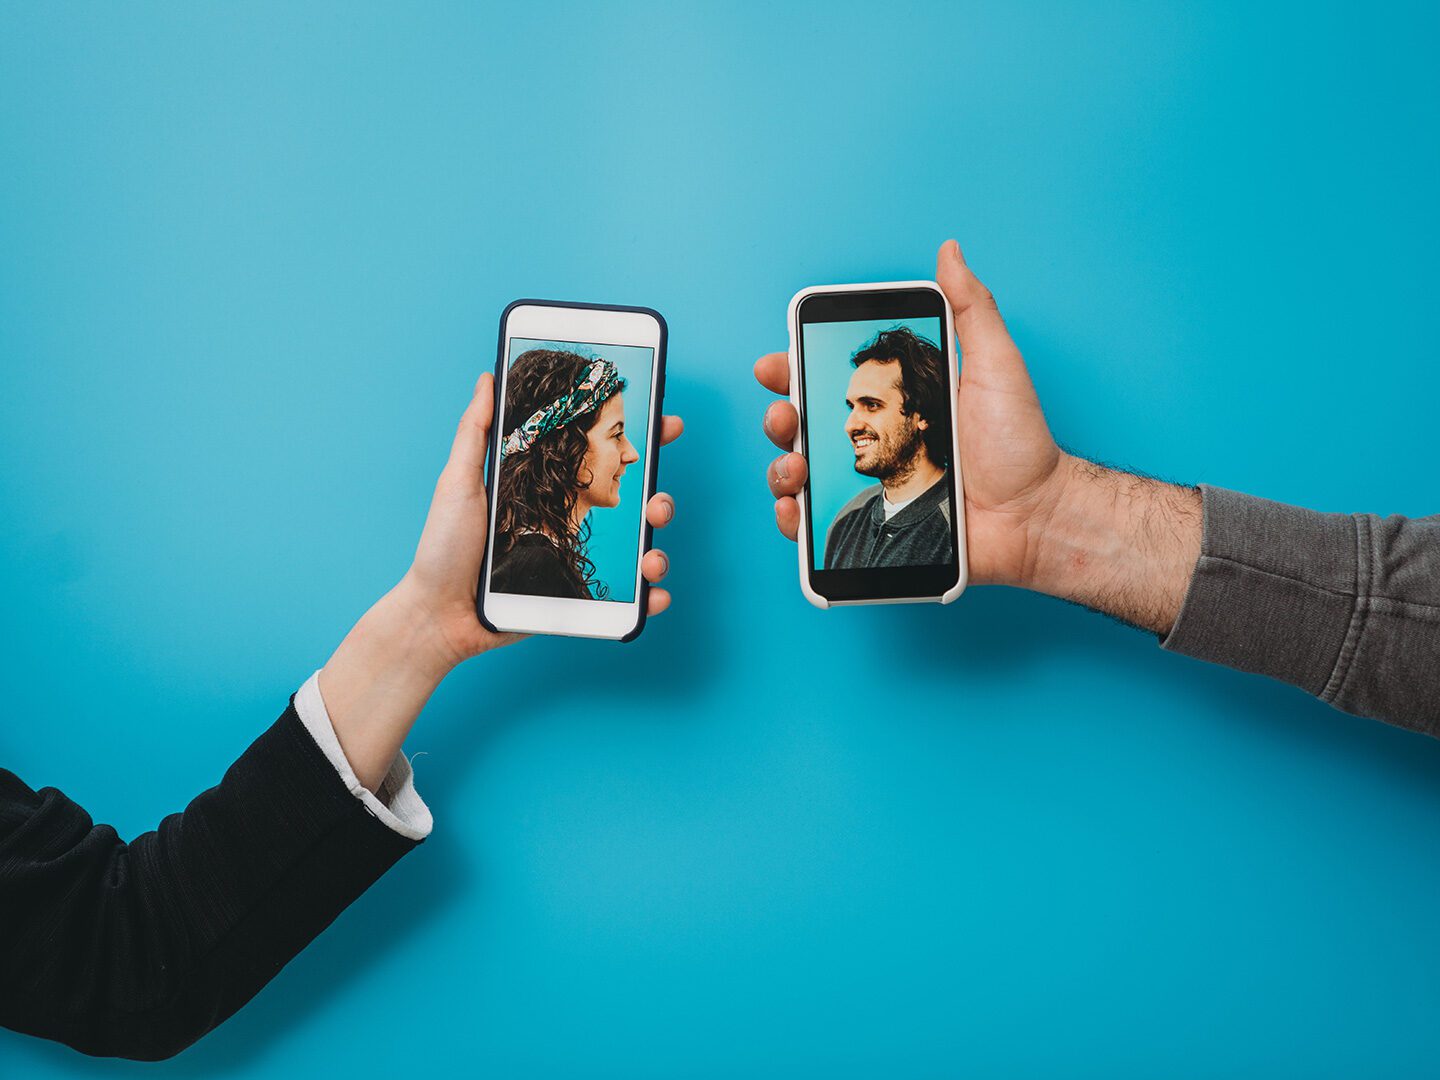 zwei Personen halten Smartphones mit Bildern von 2 Personen, die miteinander sprechen